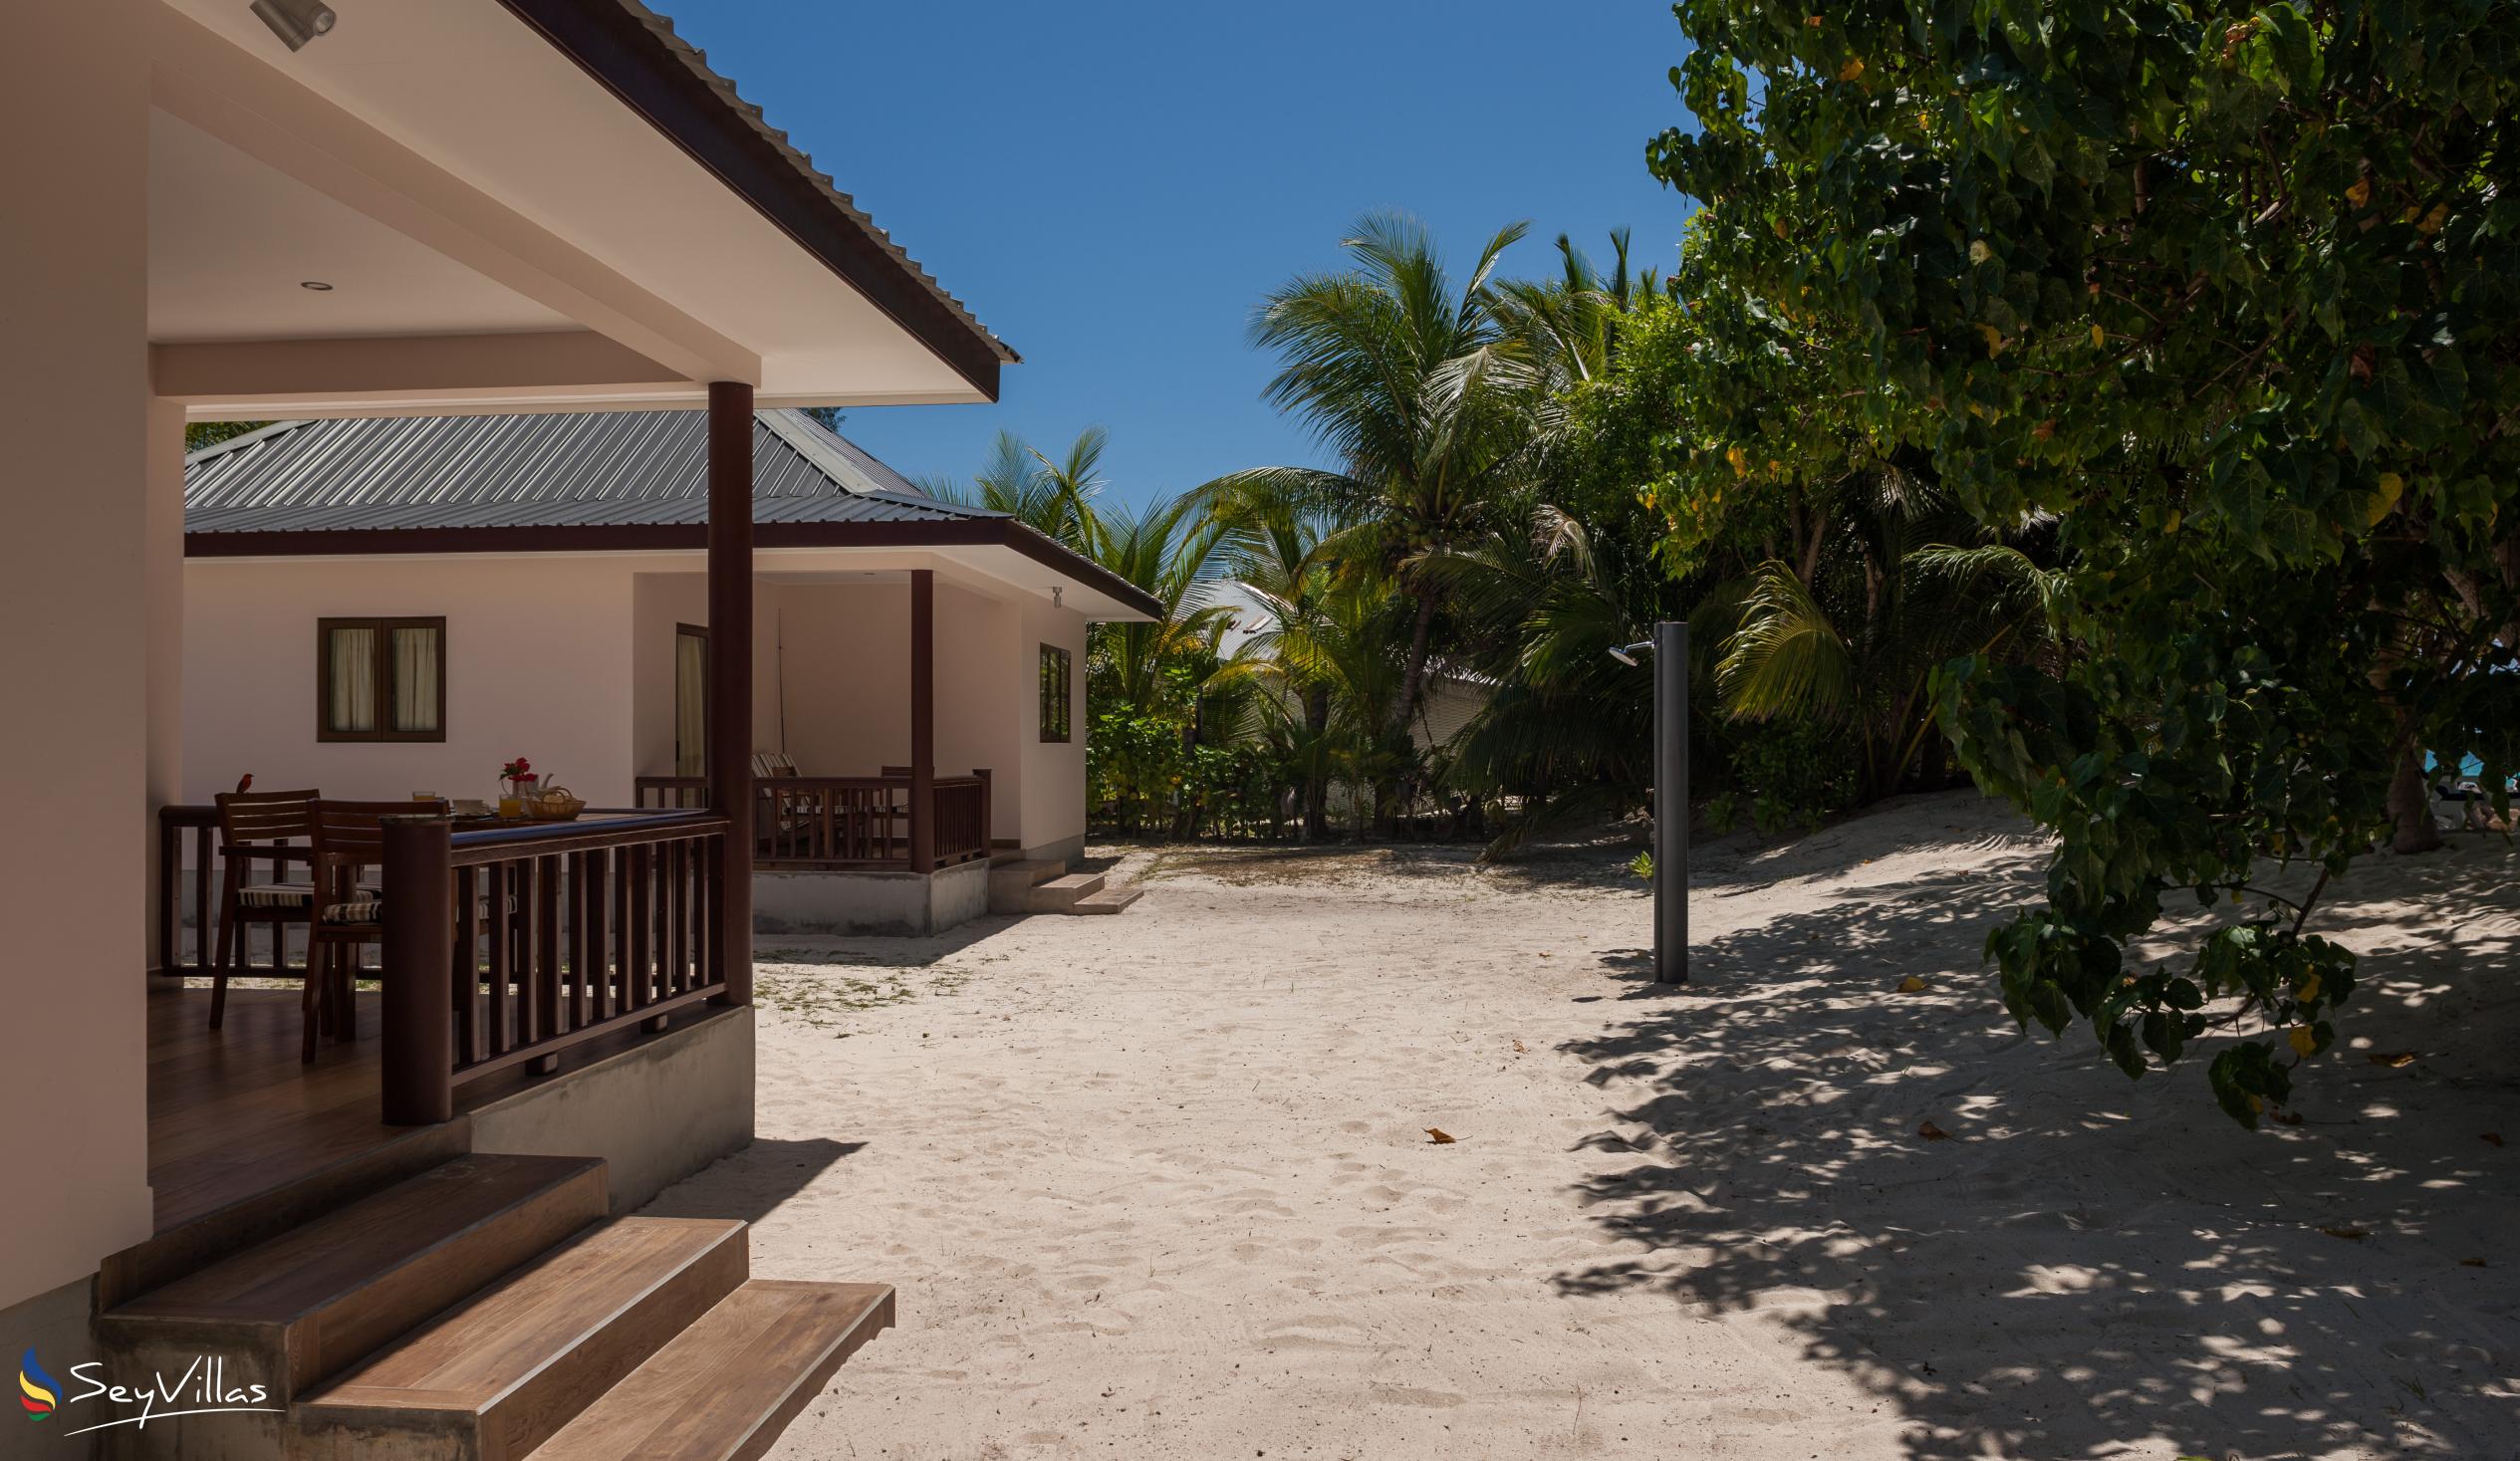 Foto 5: Villa Belle Plage - Aussenbereich - Praslin (Seychellen)